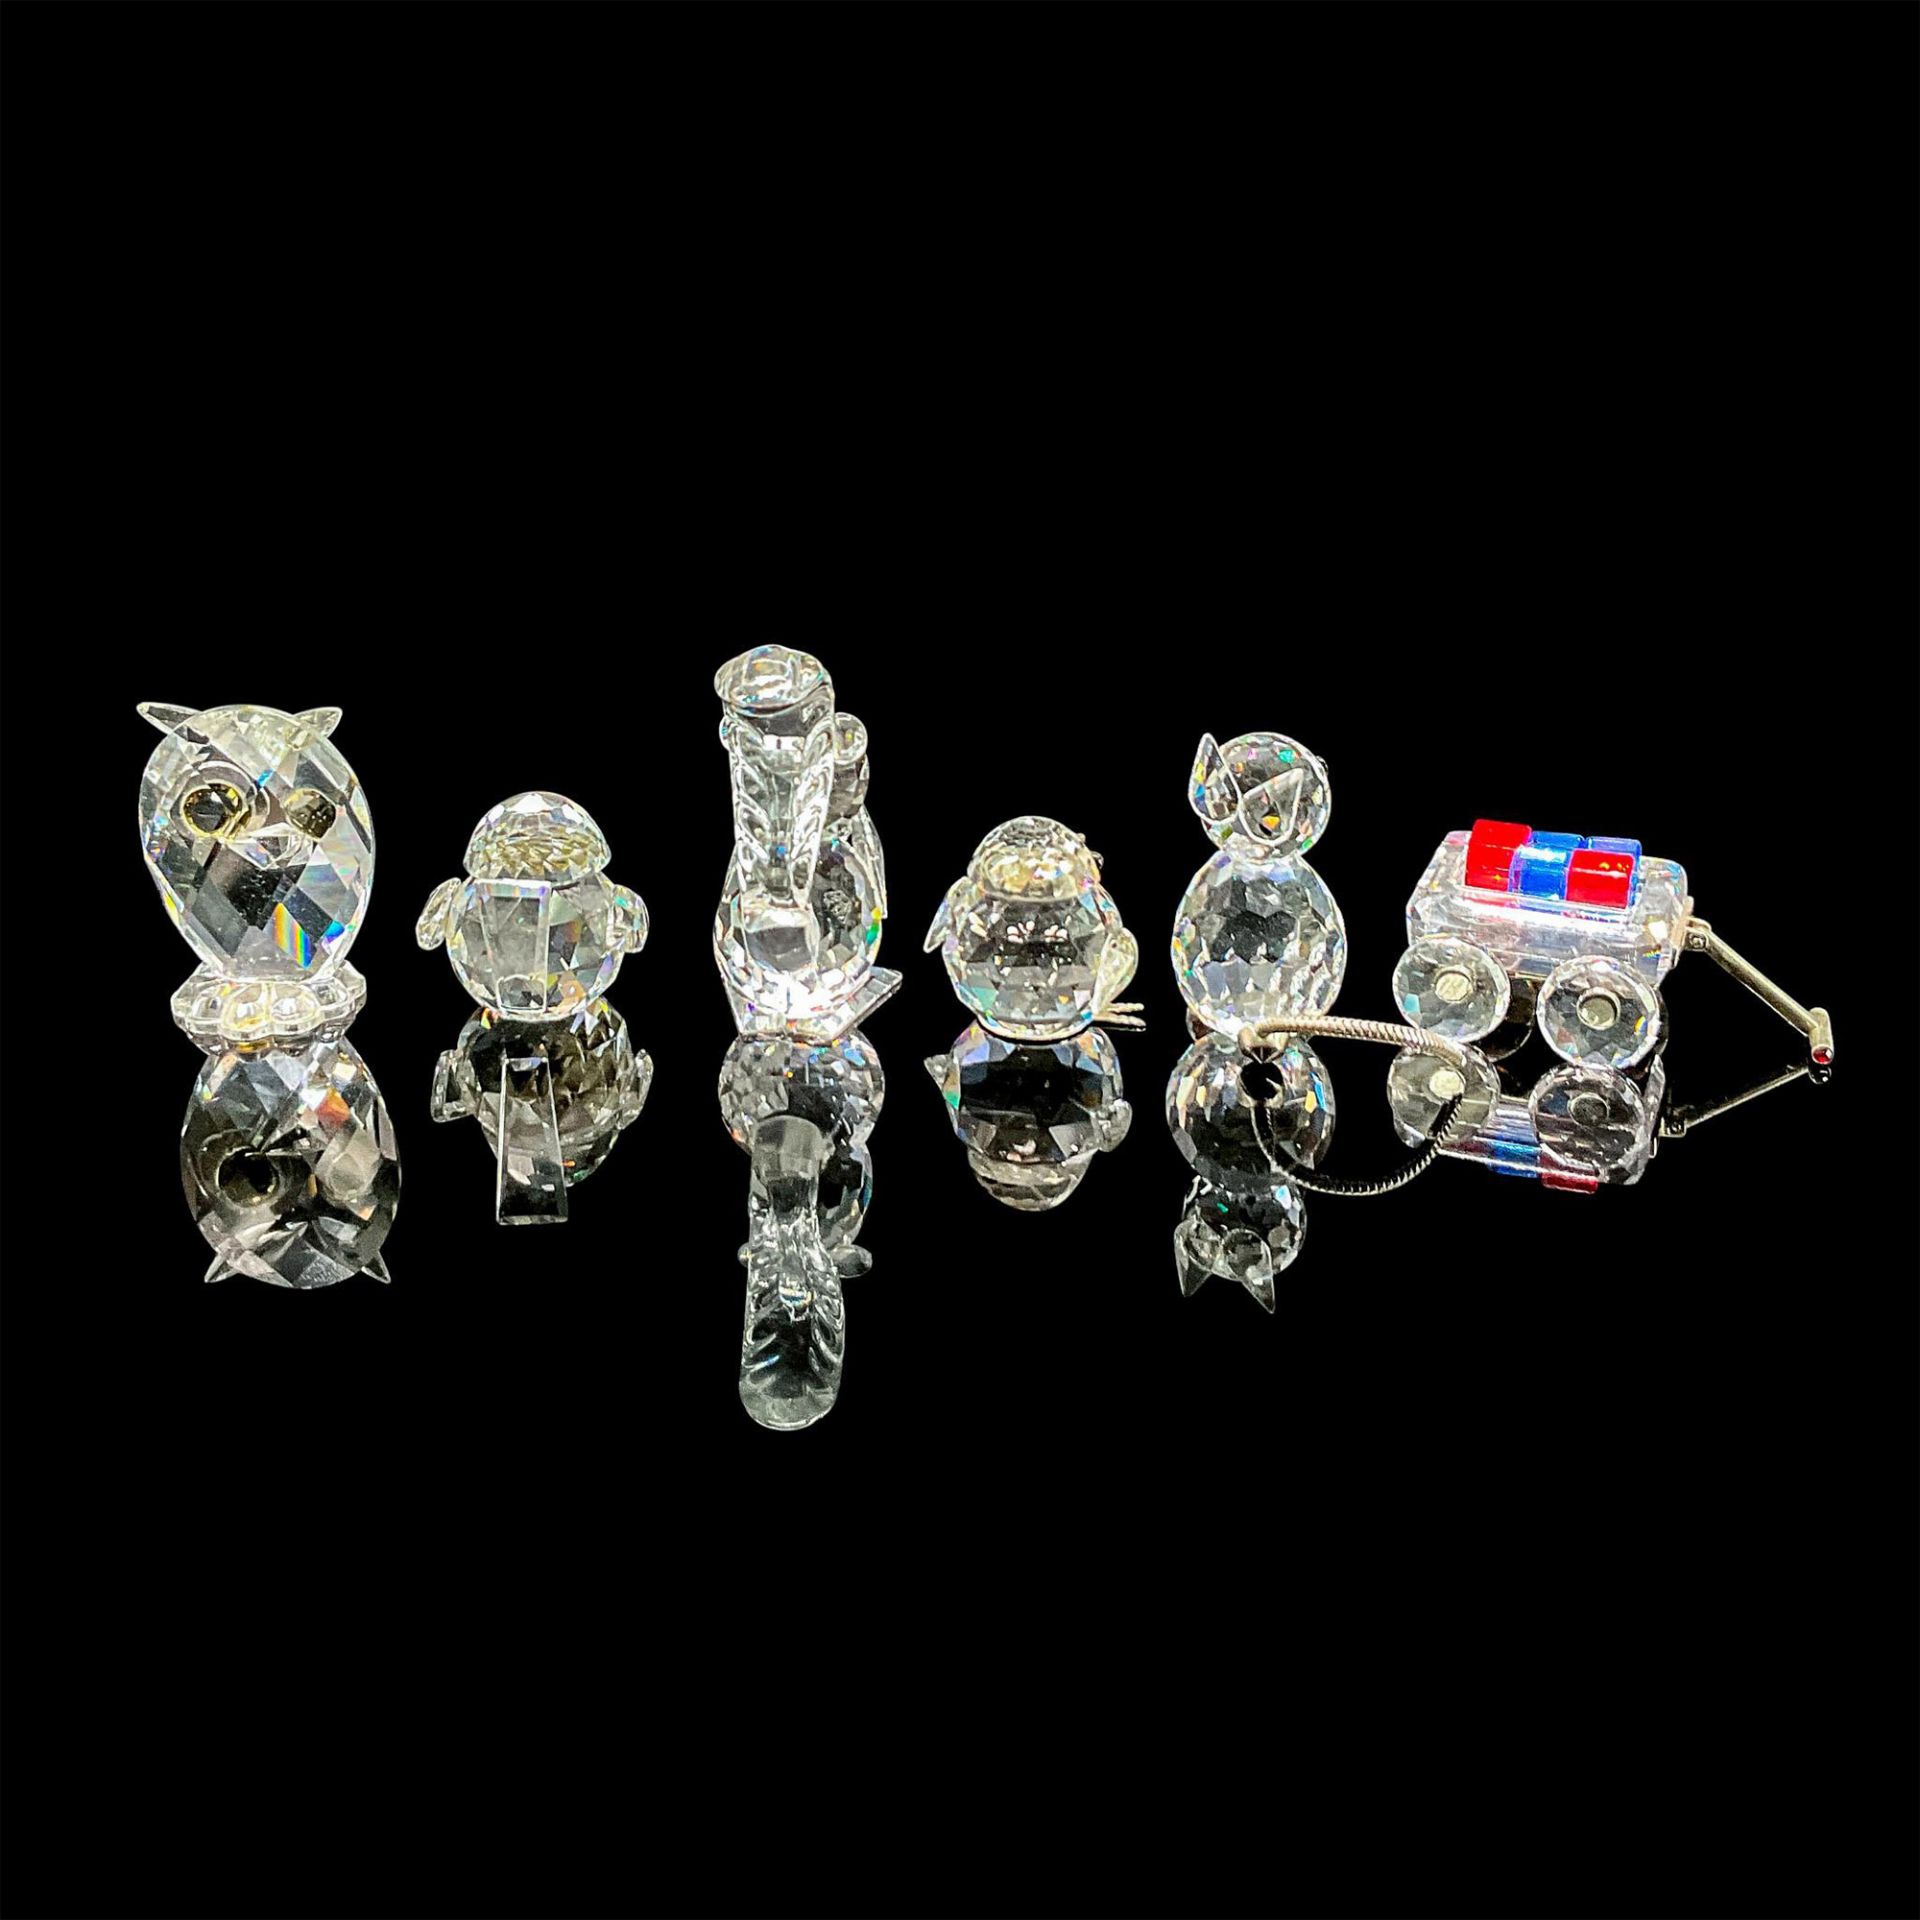 6pc Swarovski Silver Crystal Figurines, Various Animals - Image 2 of 3